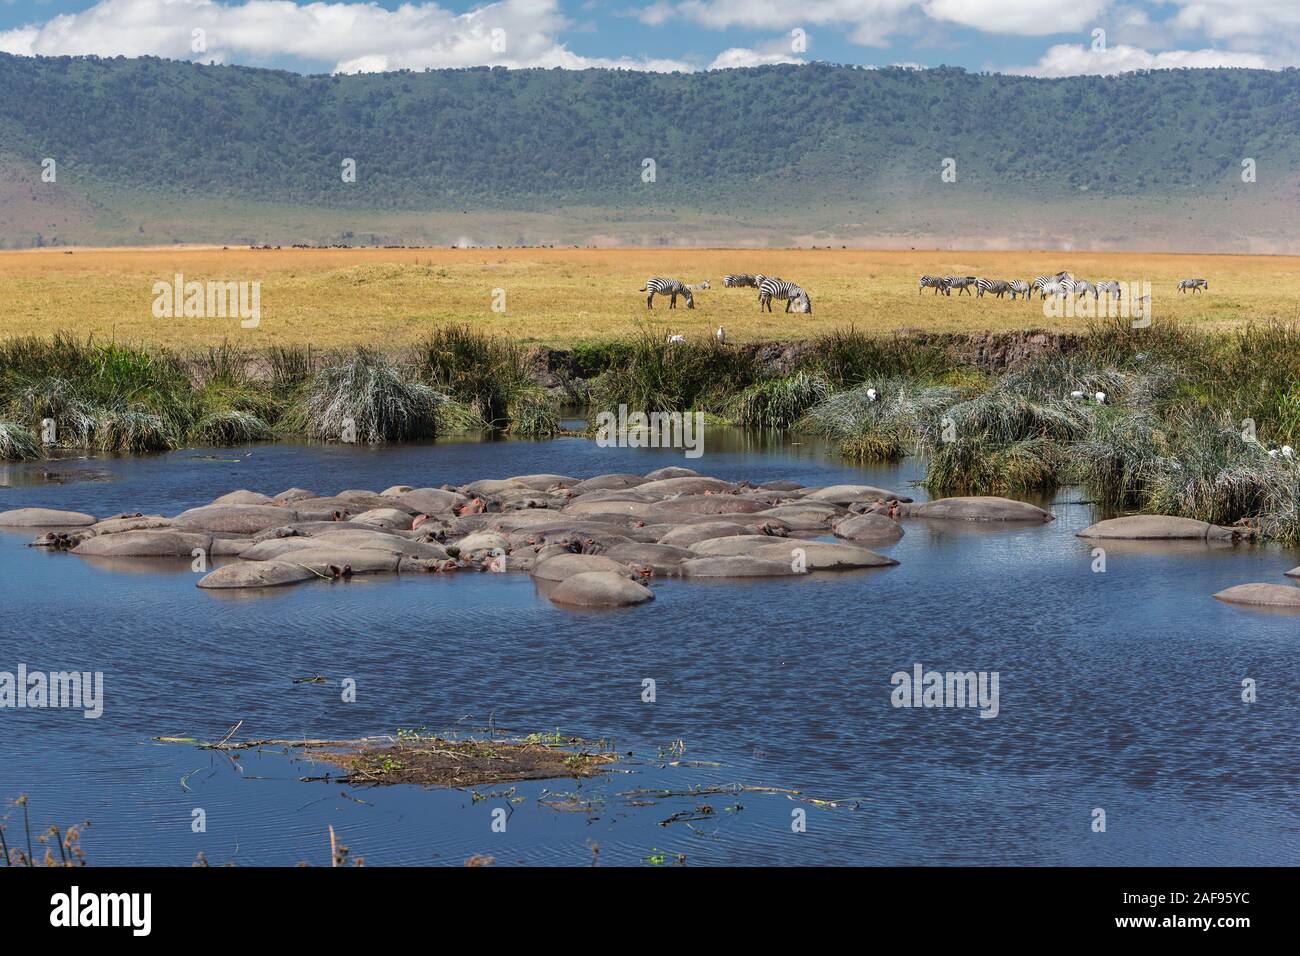 La República Unida de Tanzanía. Cráter del Ngorongoro, Hipopótamos en la piscina de hipopótamos, cebras en la distancia. Foto de stock